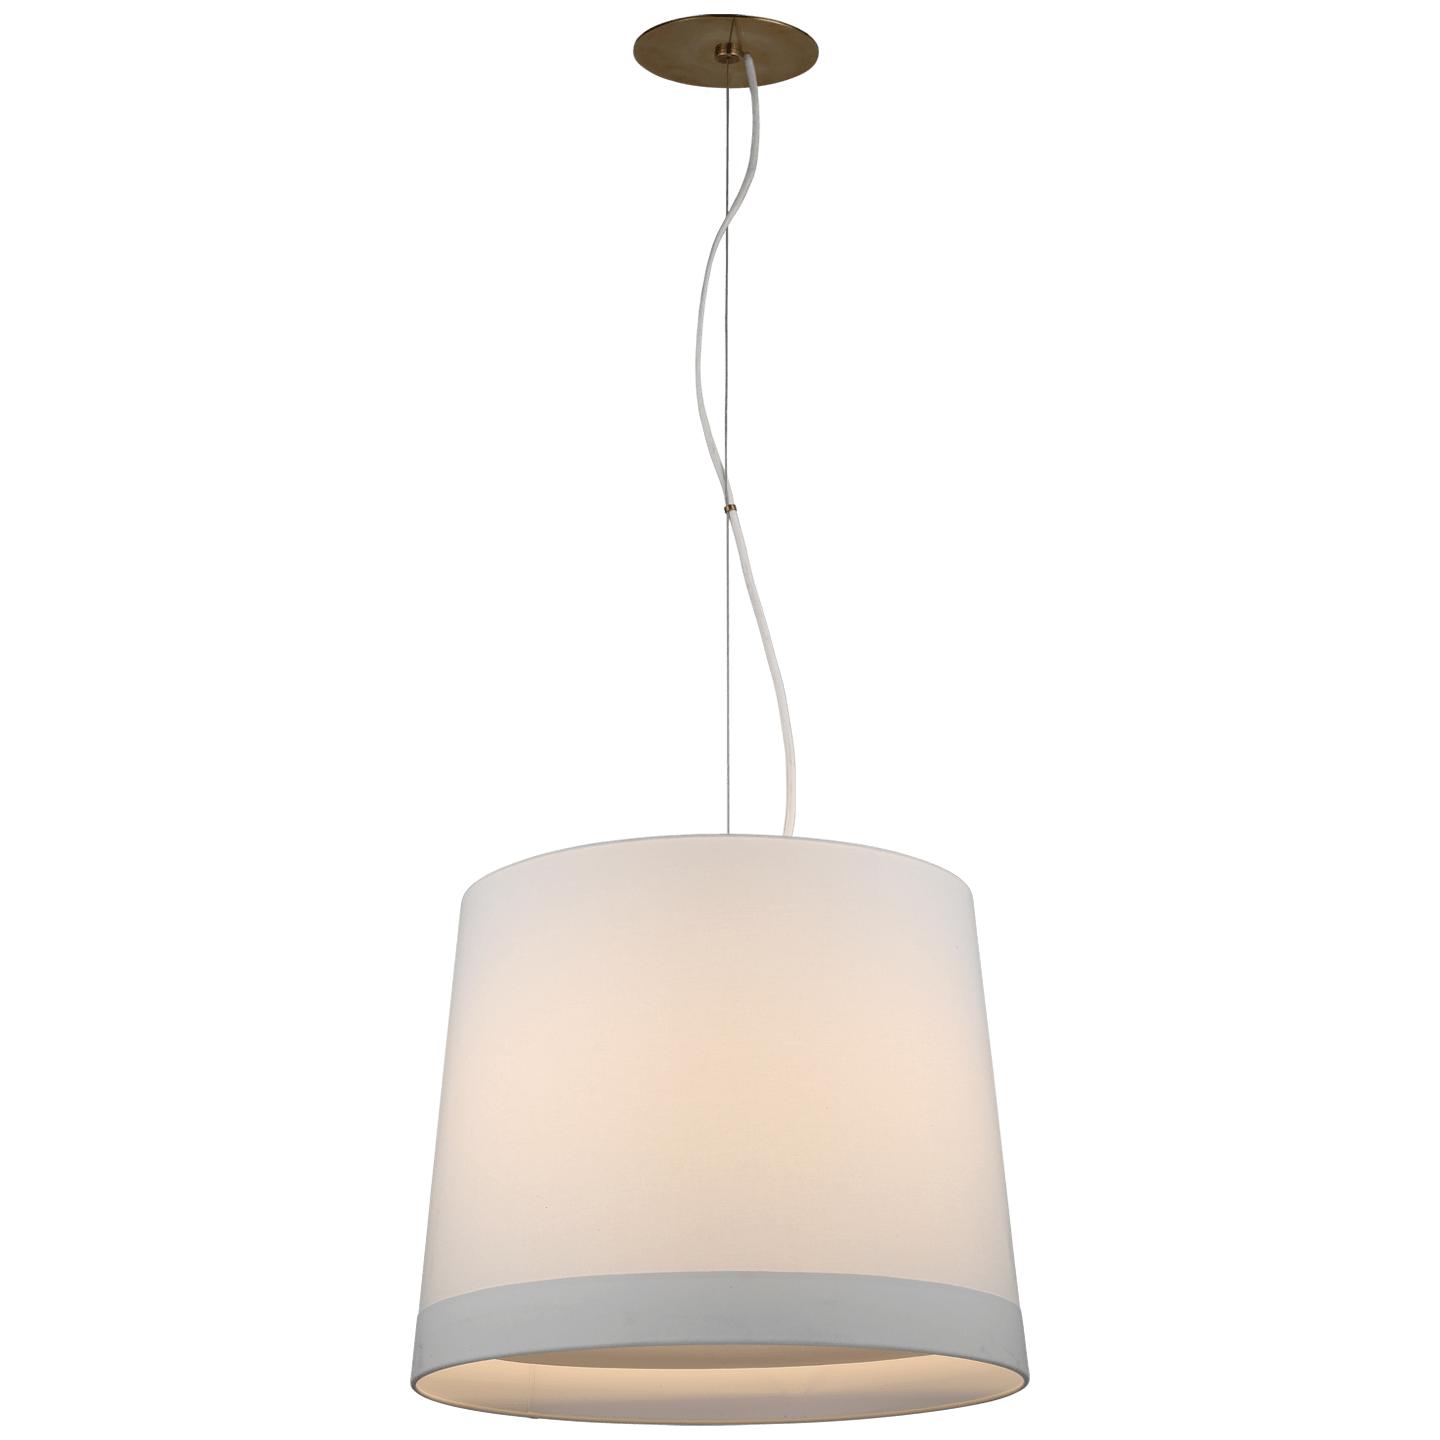 Купить Подвесной светильник Sash Medium Hanging Shade в интернет-магазине roooms.ru